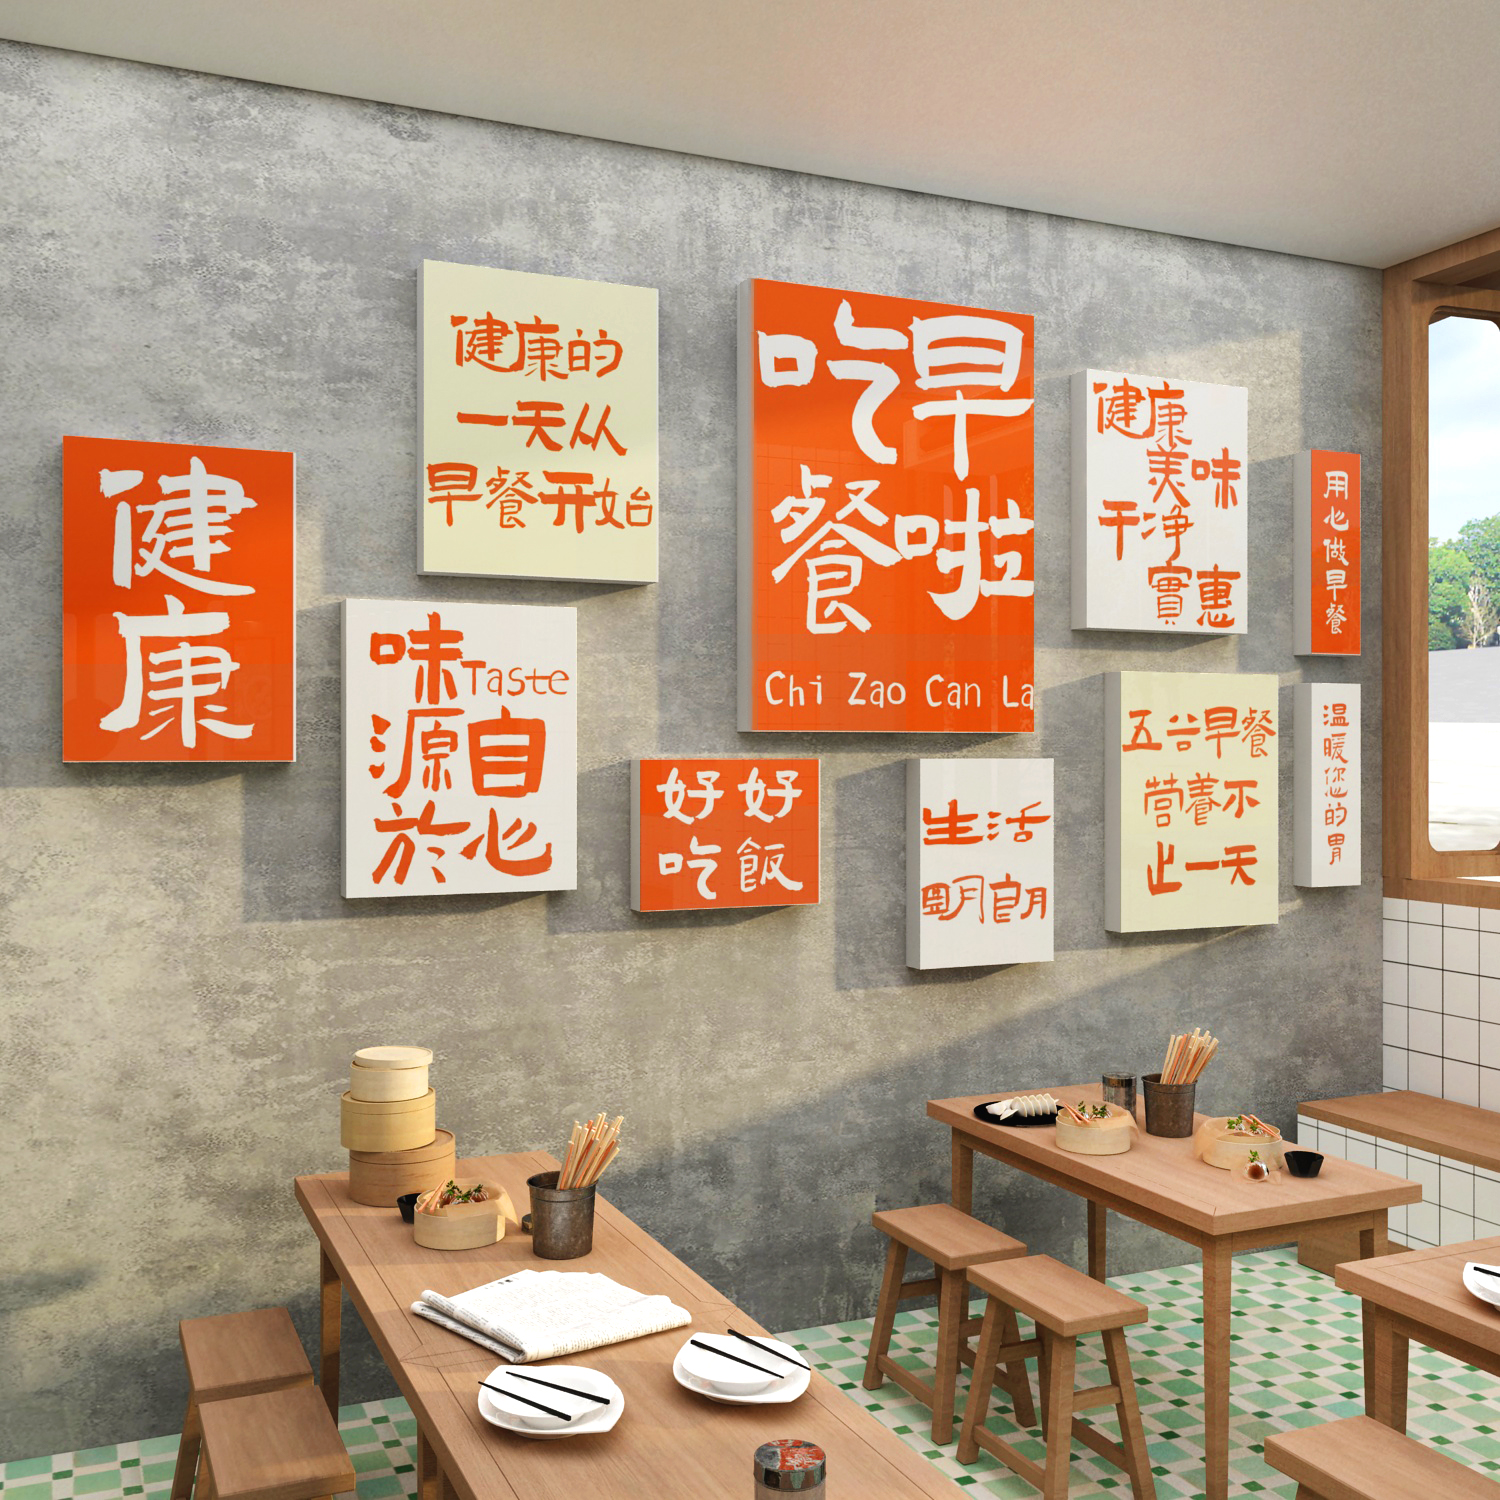 网红早餐店墙面贴纸画包子铺饭店快餐厅布置广告海报装修饰效果图